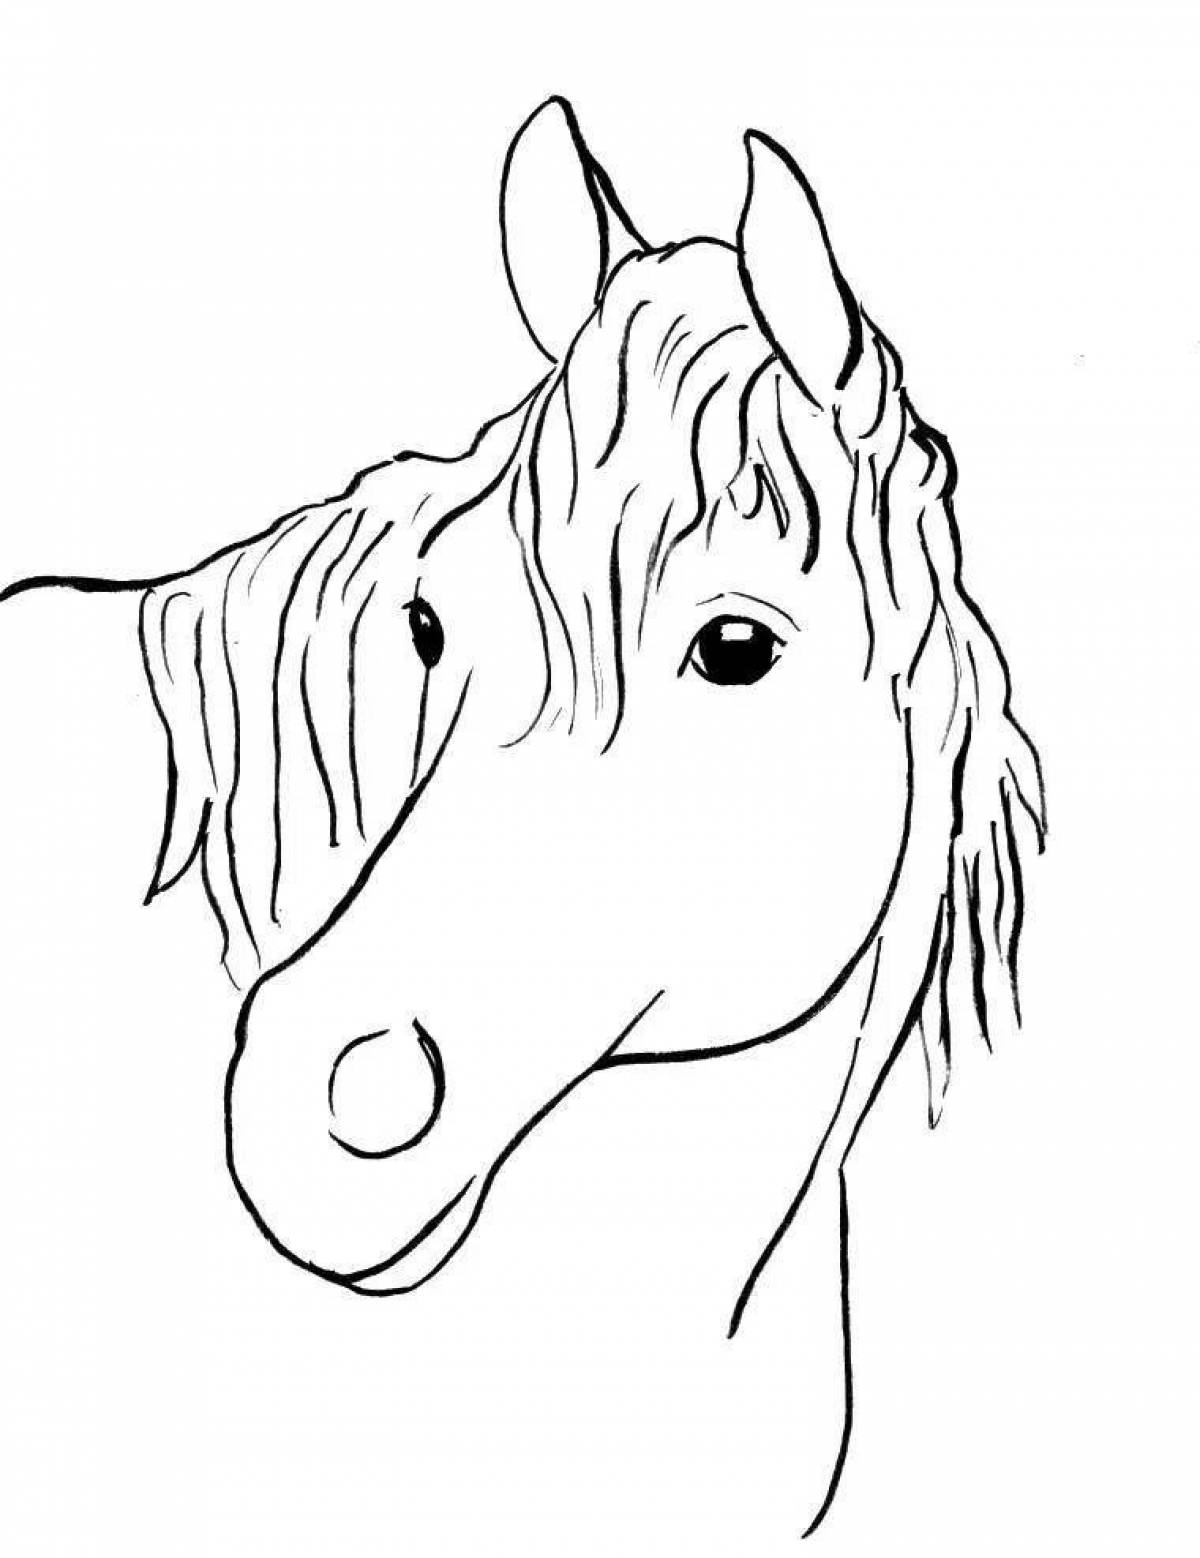 Великолепная раскраска голова лошади